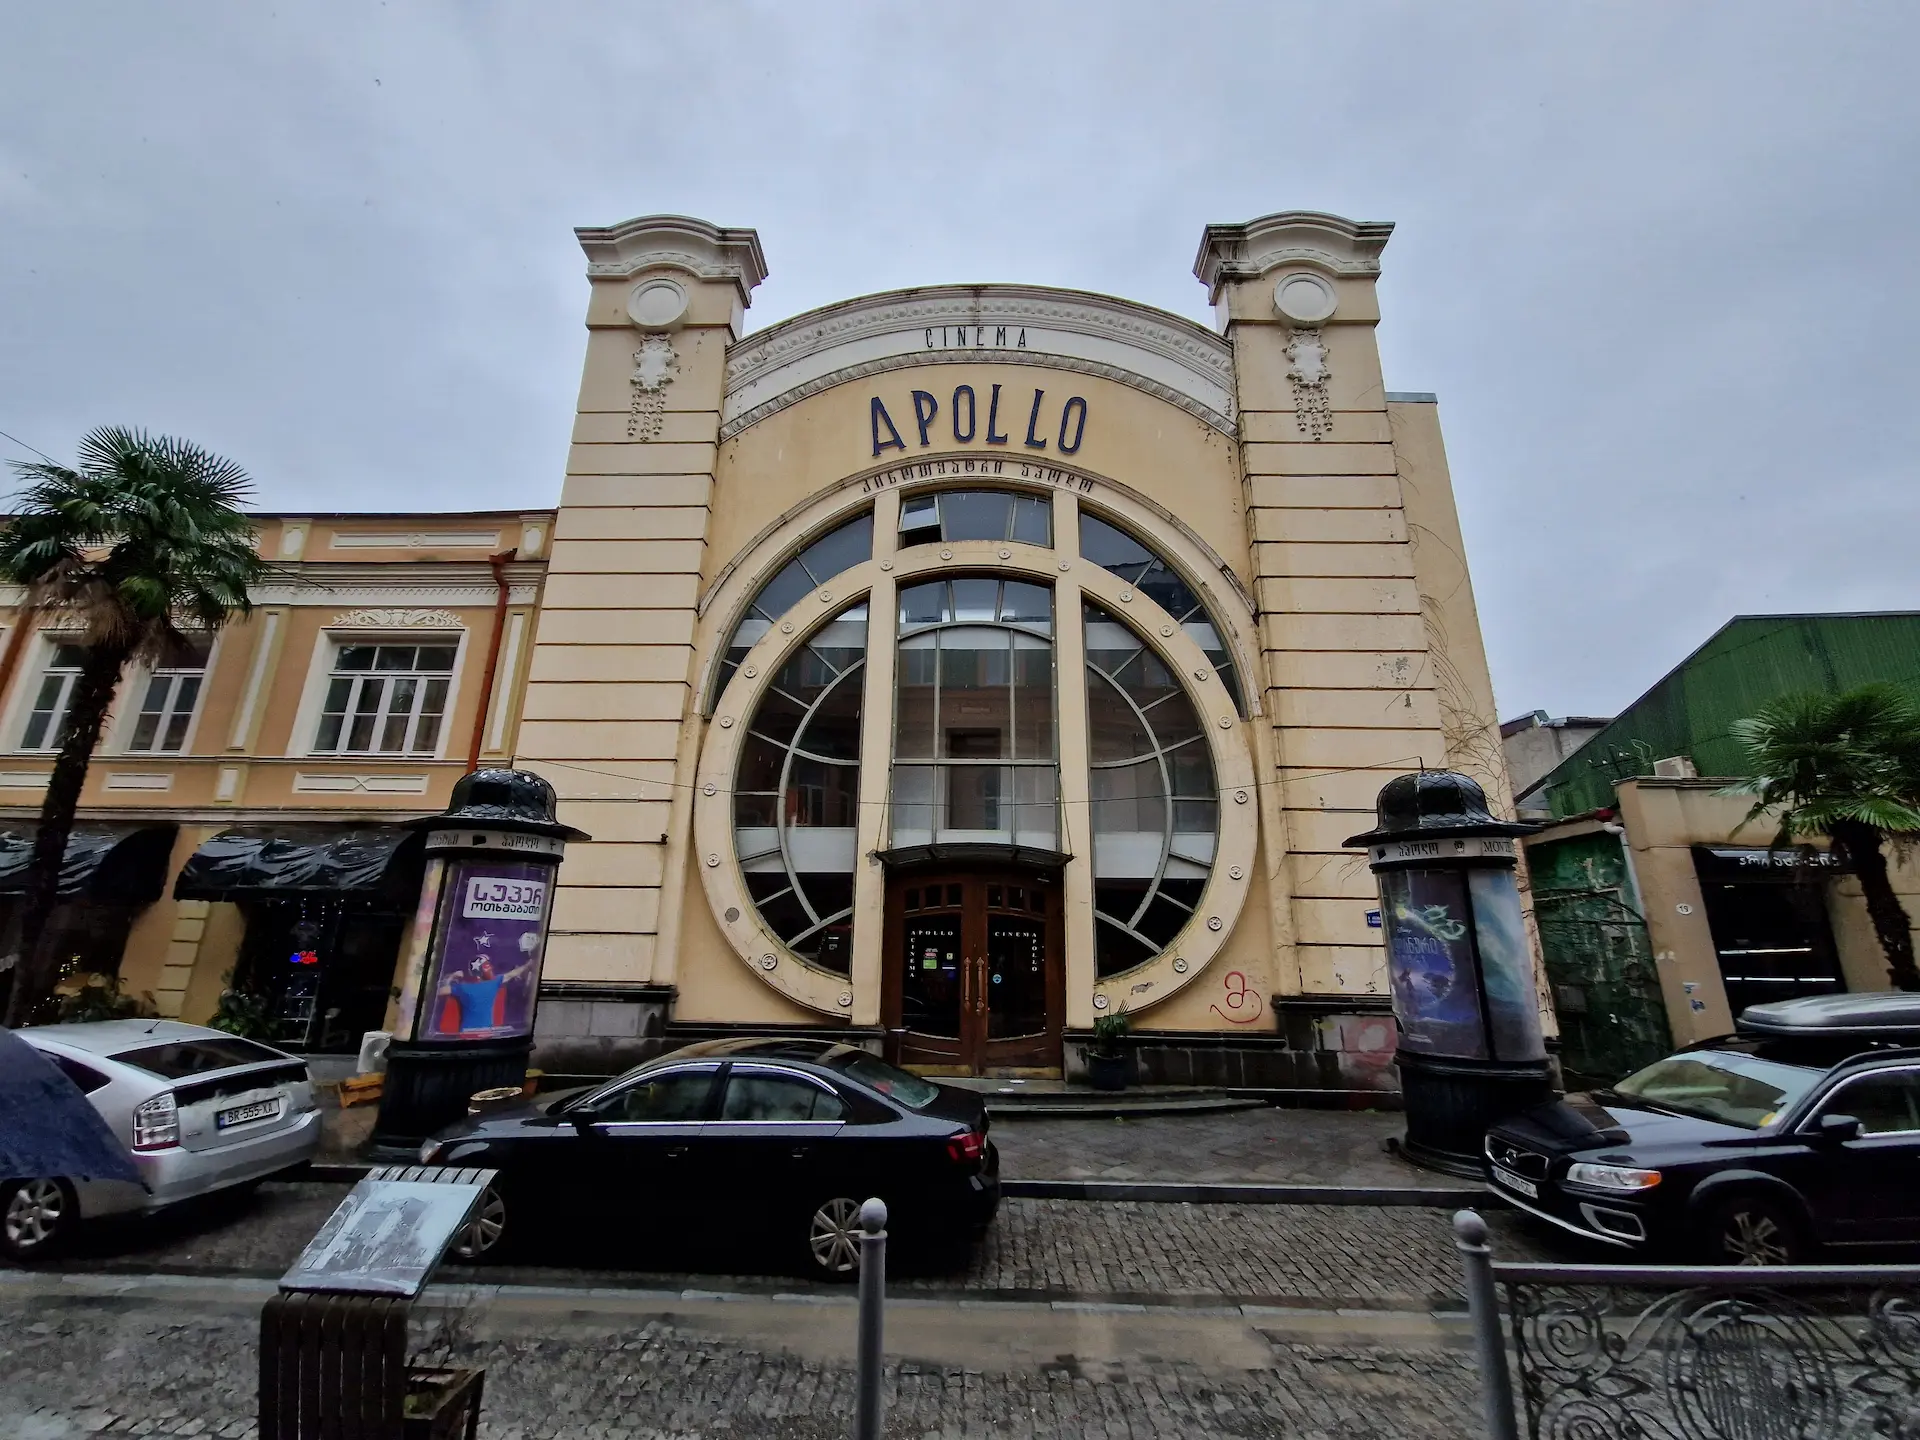 Le cinéma Apollo à Batoumi. La façade est percée par une énorme baie vitrée circulaire, et le haut du bâtiment répète la courbe du cercle. 'Cinema Apollo' est inscrit sur la façade dans un style très années 1920.